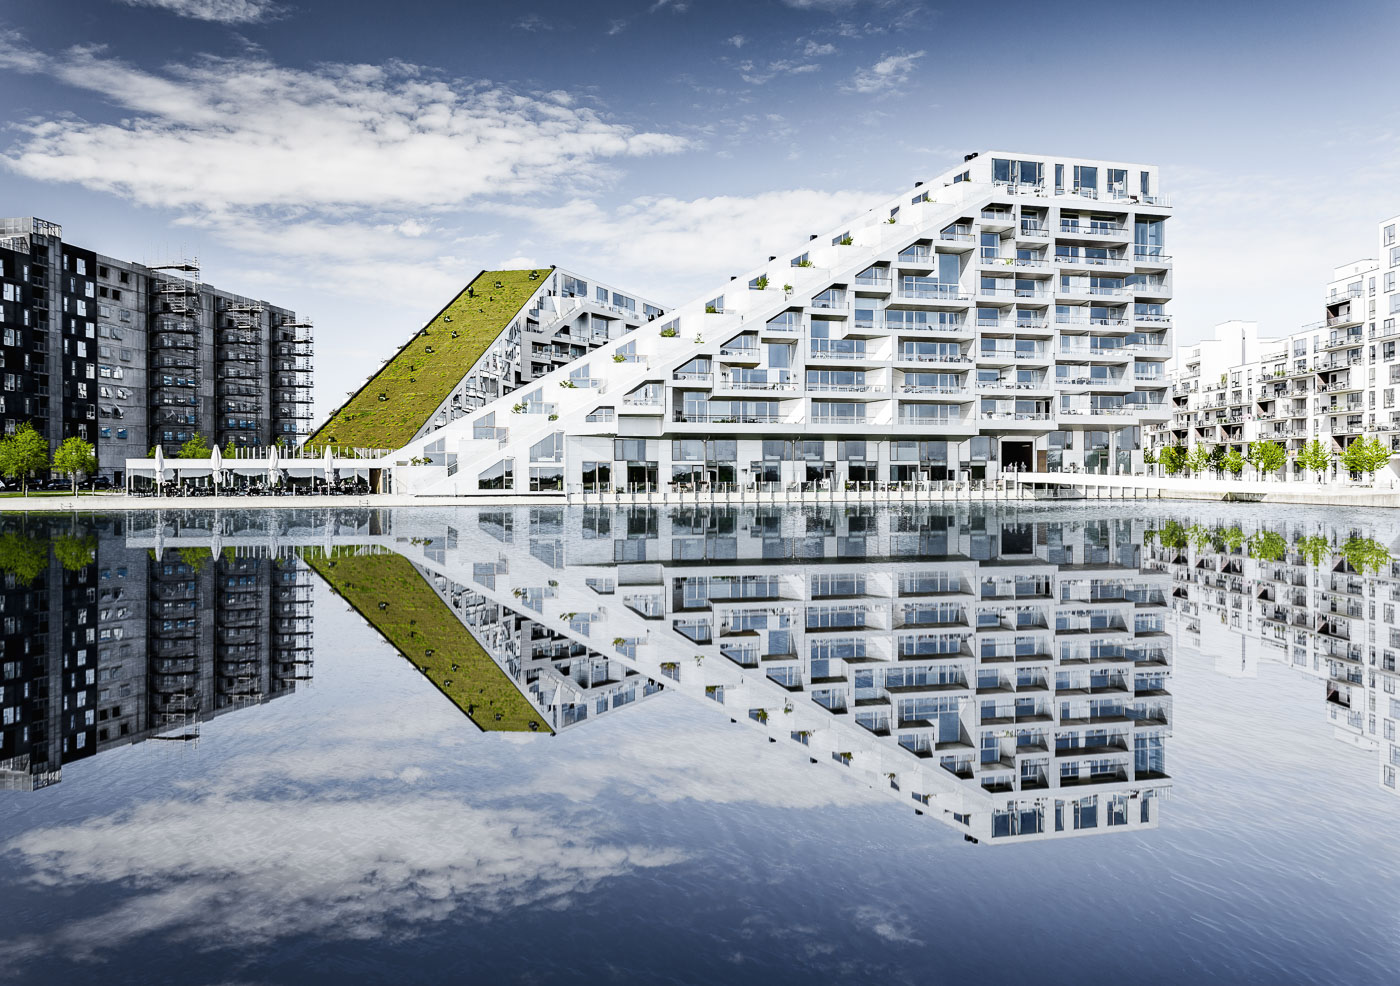 8 House Copenhagen by Bjarke Ingels Group – Fotograf Hannover